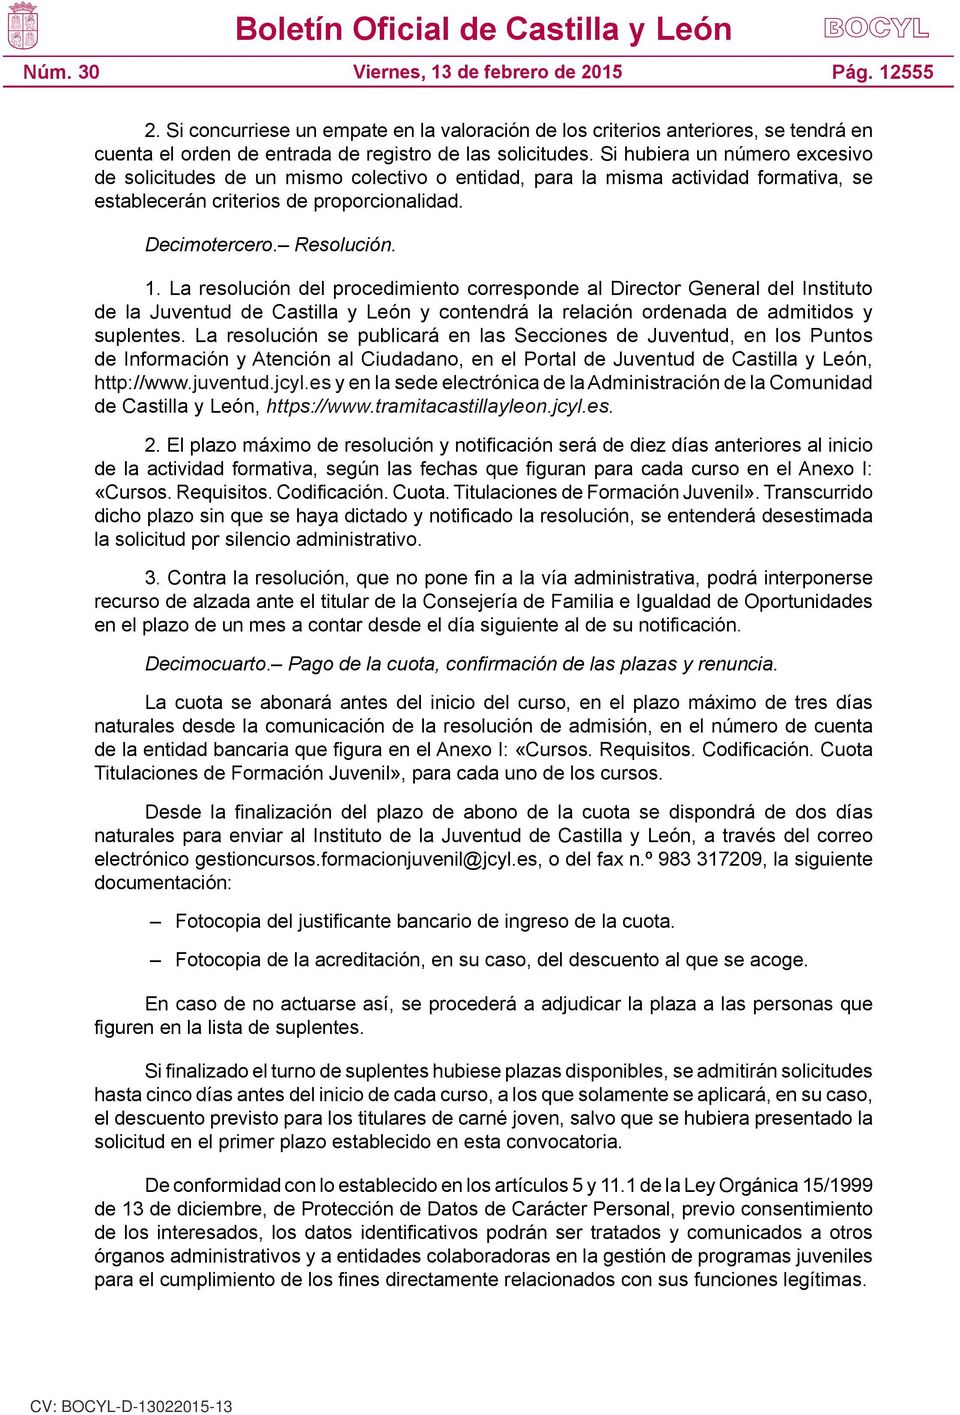 La resolución del procedimiento corresponde al Director General del Instituto de la Juventud de Castilla y León y contendrá la relación ordenada de admitidos y suplentes.